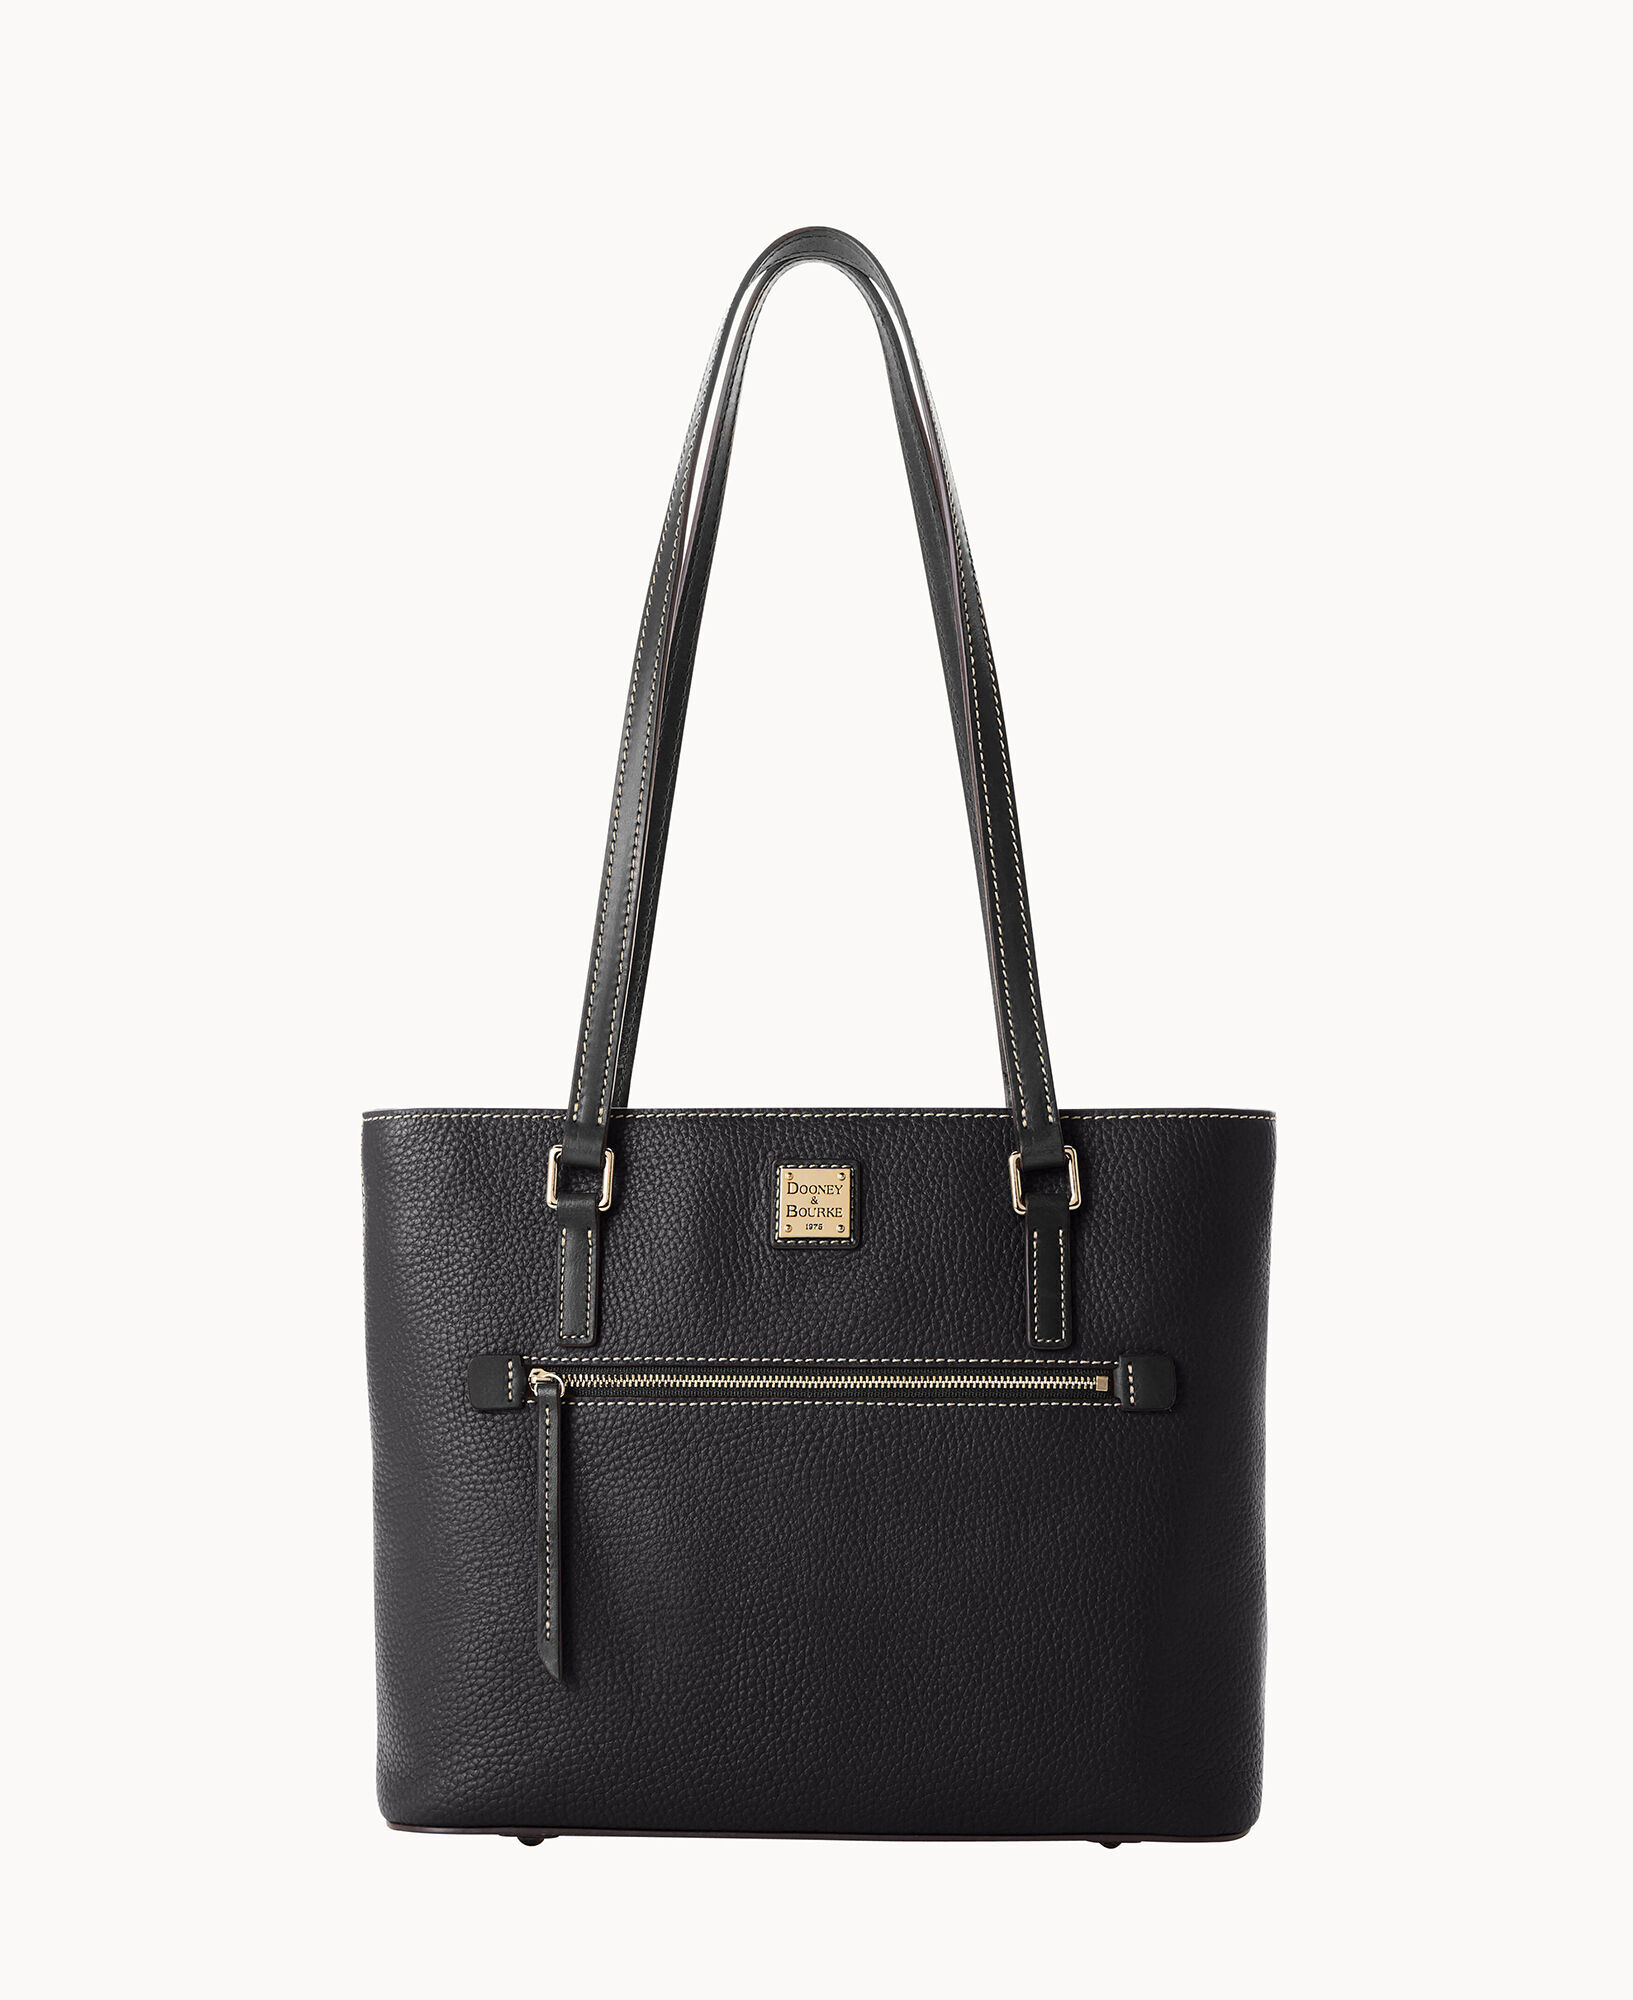 Dooney & Bourke Women's Leather Bag